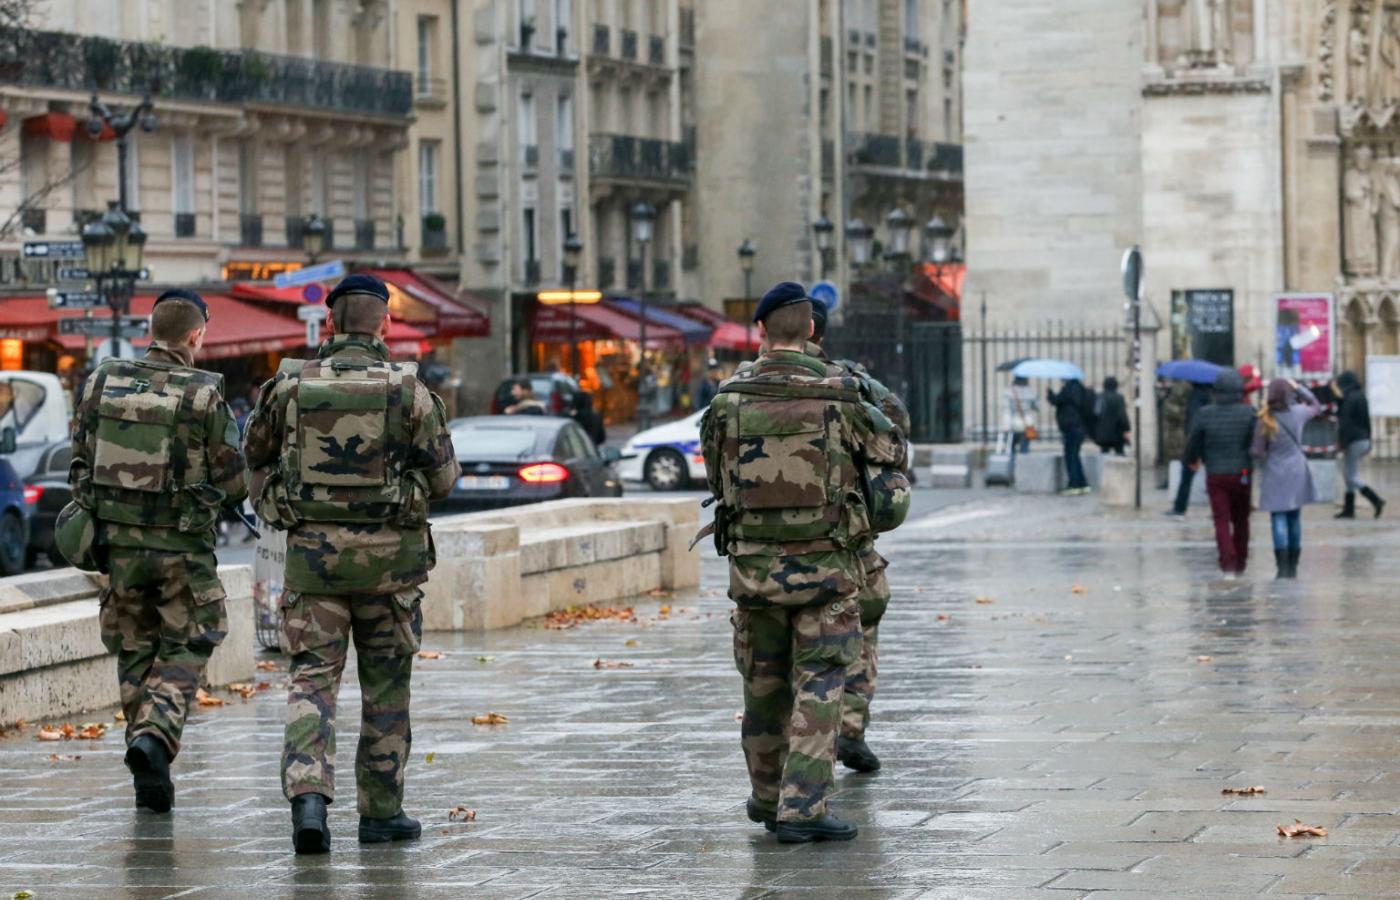 Przed tygodniem w nocy z soboty na niedzielę w pobliżu katedry Notre Dame w Paryżu znaleziono w osobowego peugeota z kilkoma butlami gazowymi w środku. Policja aresztowała właściciela, którego podejrzewa o religijny radykalizm.